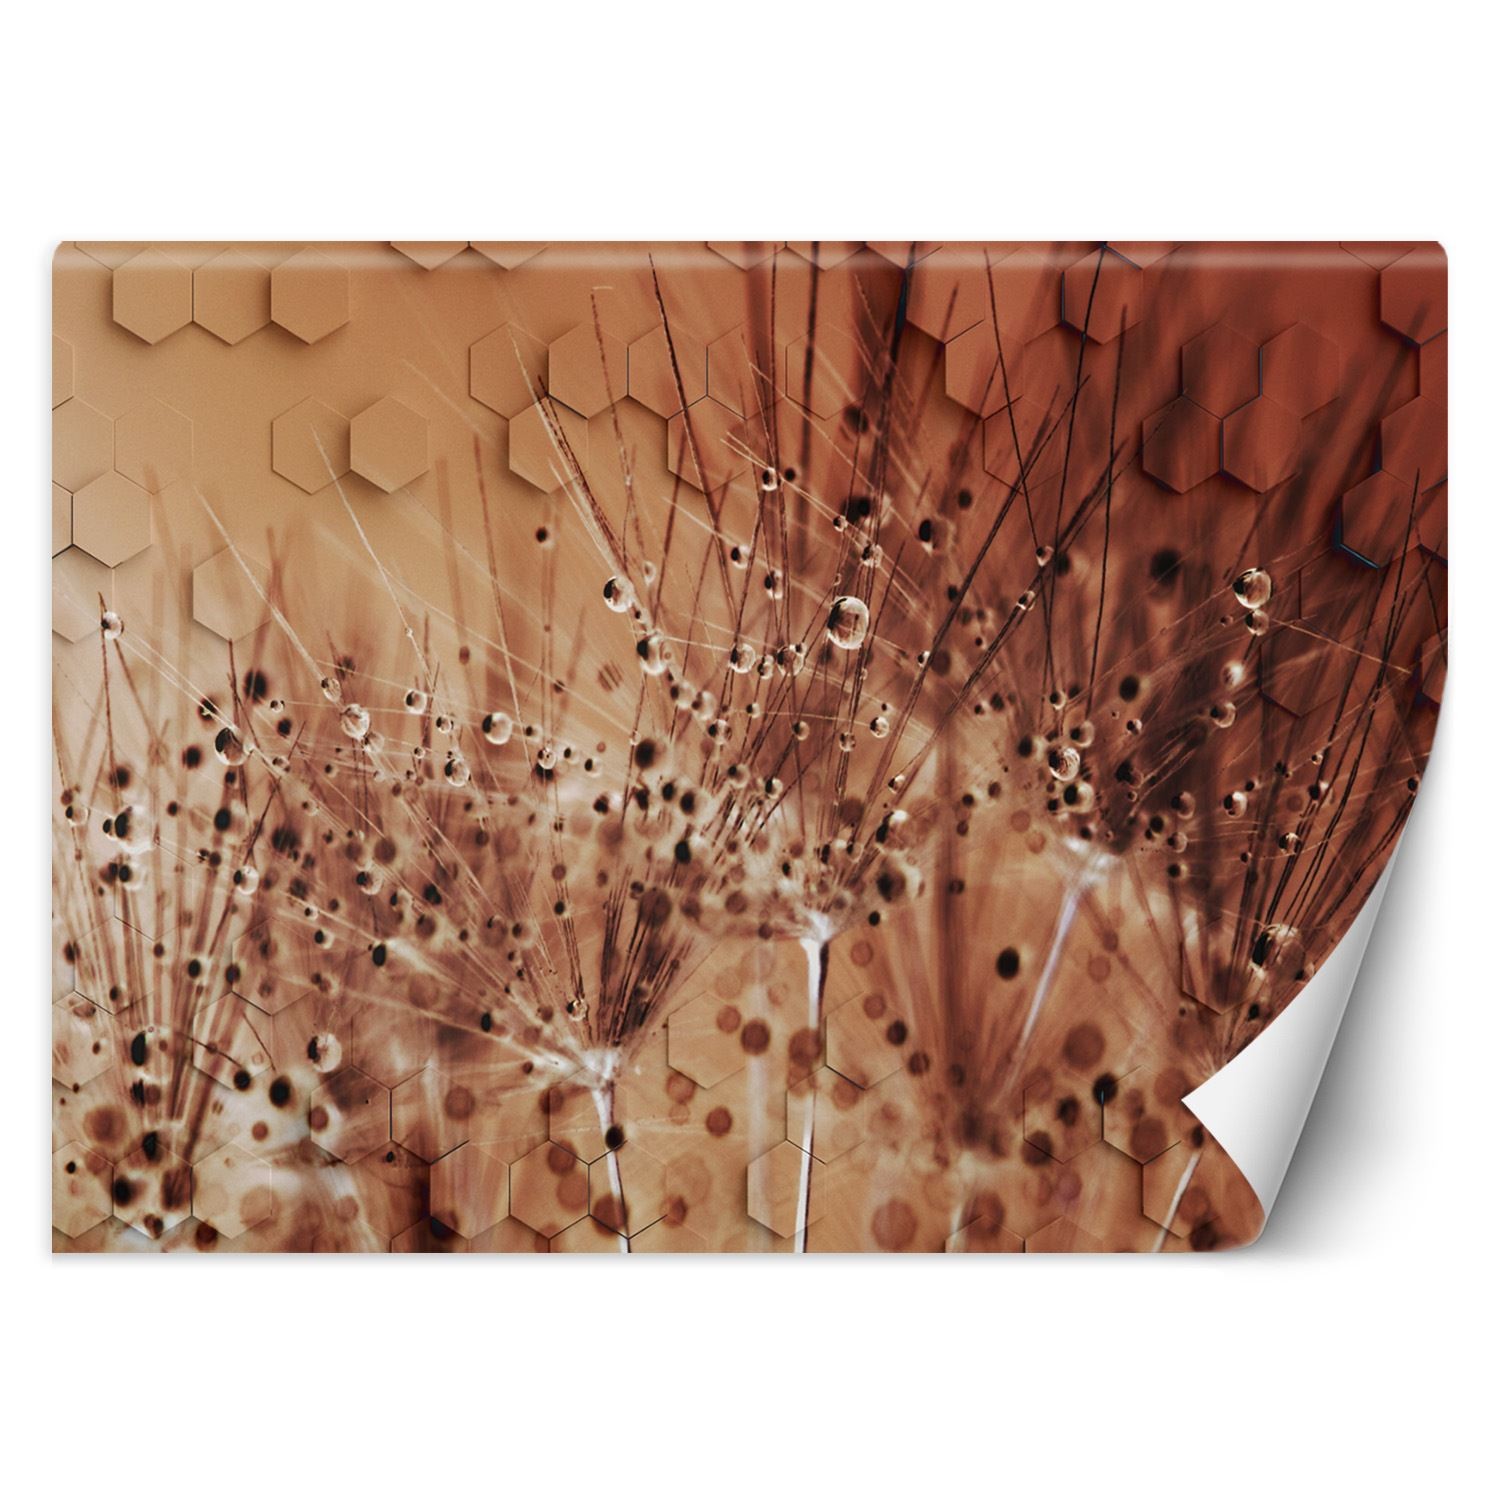 Trend24 – Behang – Dauwdruppels Met Paardebloemen – Behangpapier – Fotobehang 3D – Behang Woonkamer – 450x315x2 cm – Incl. behanglijm